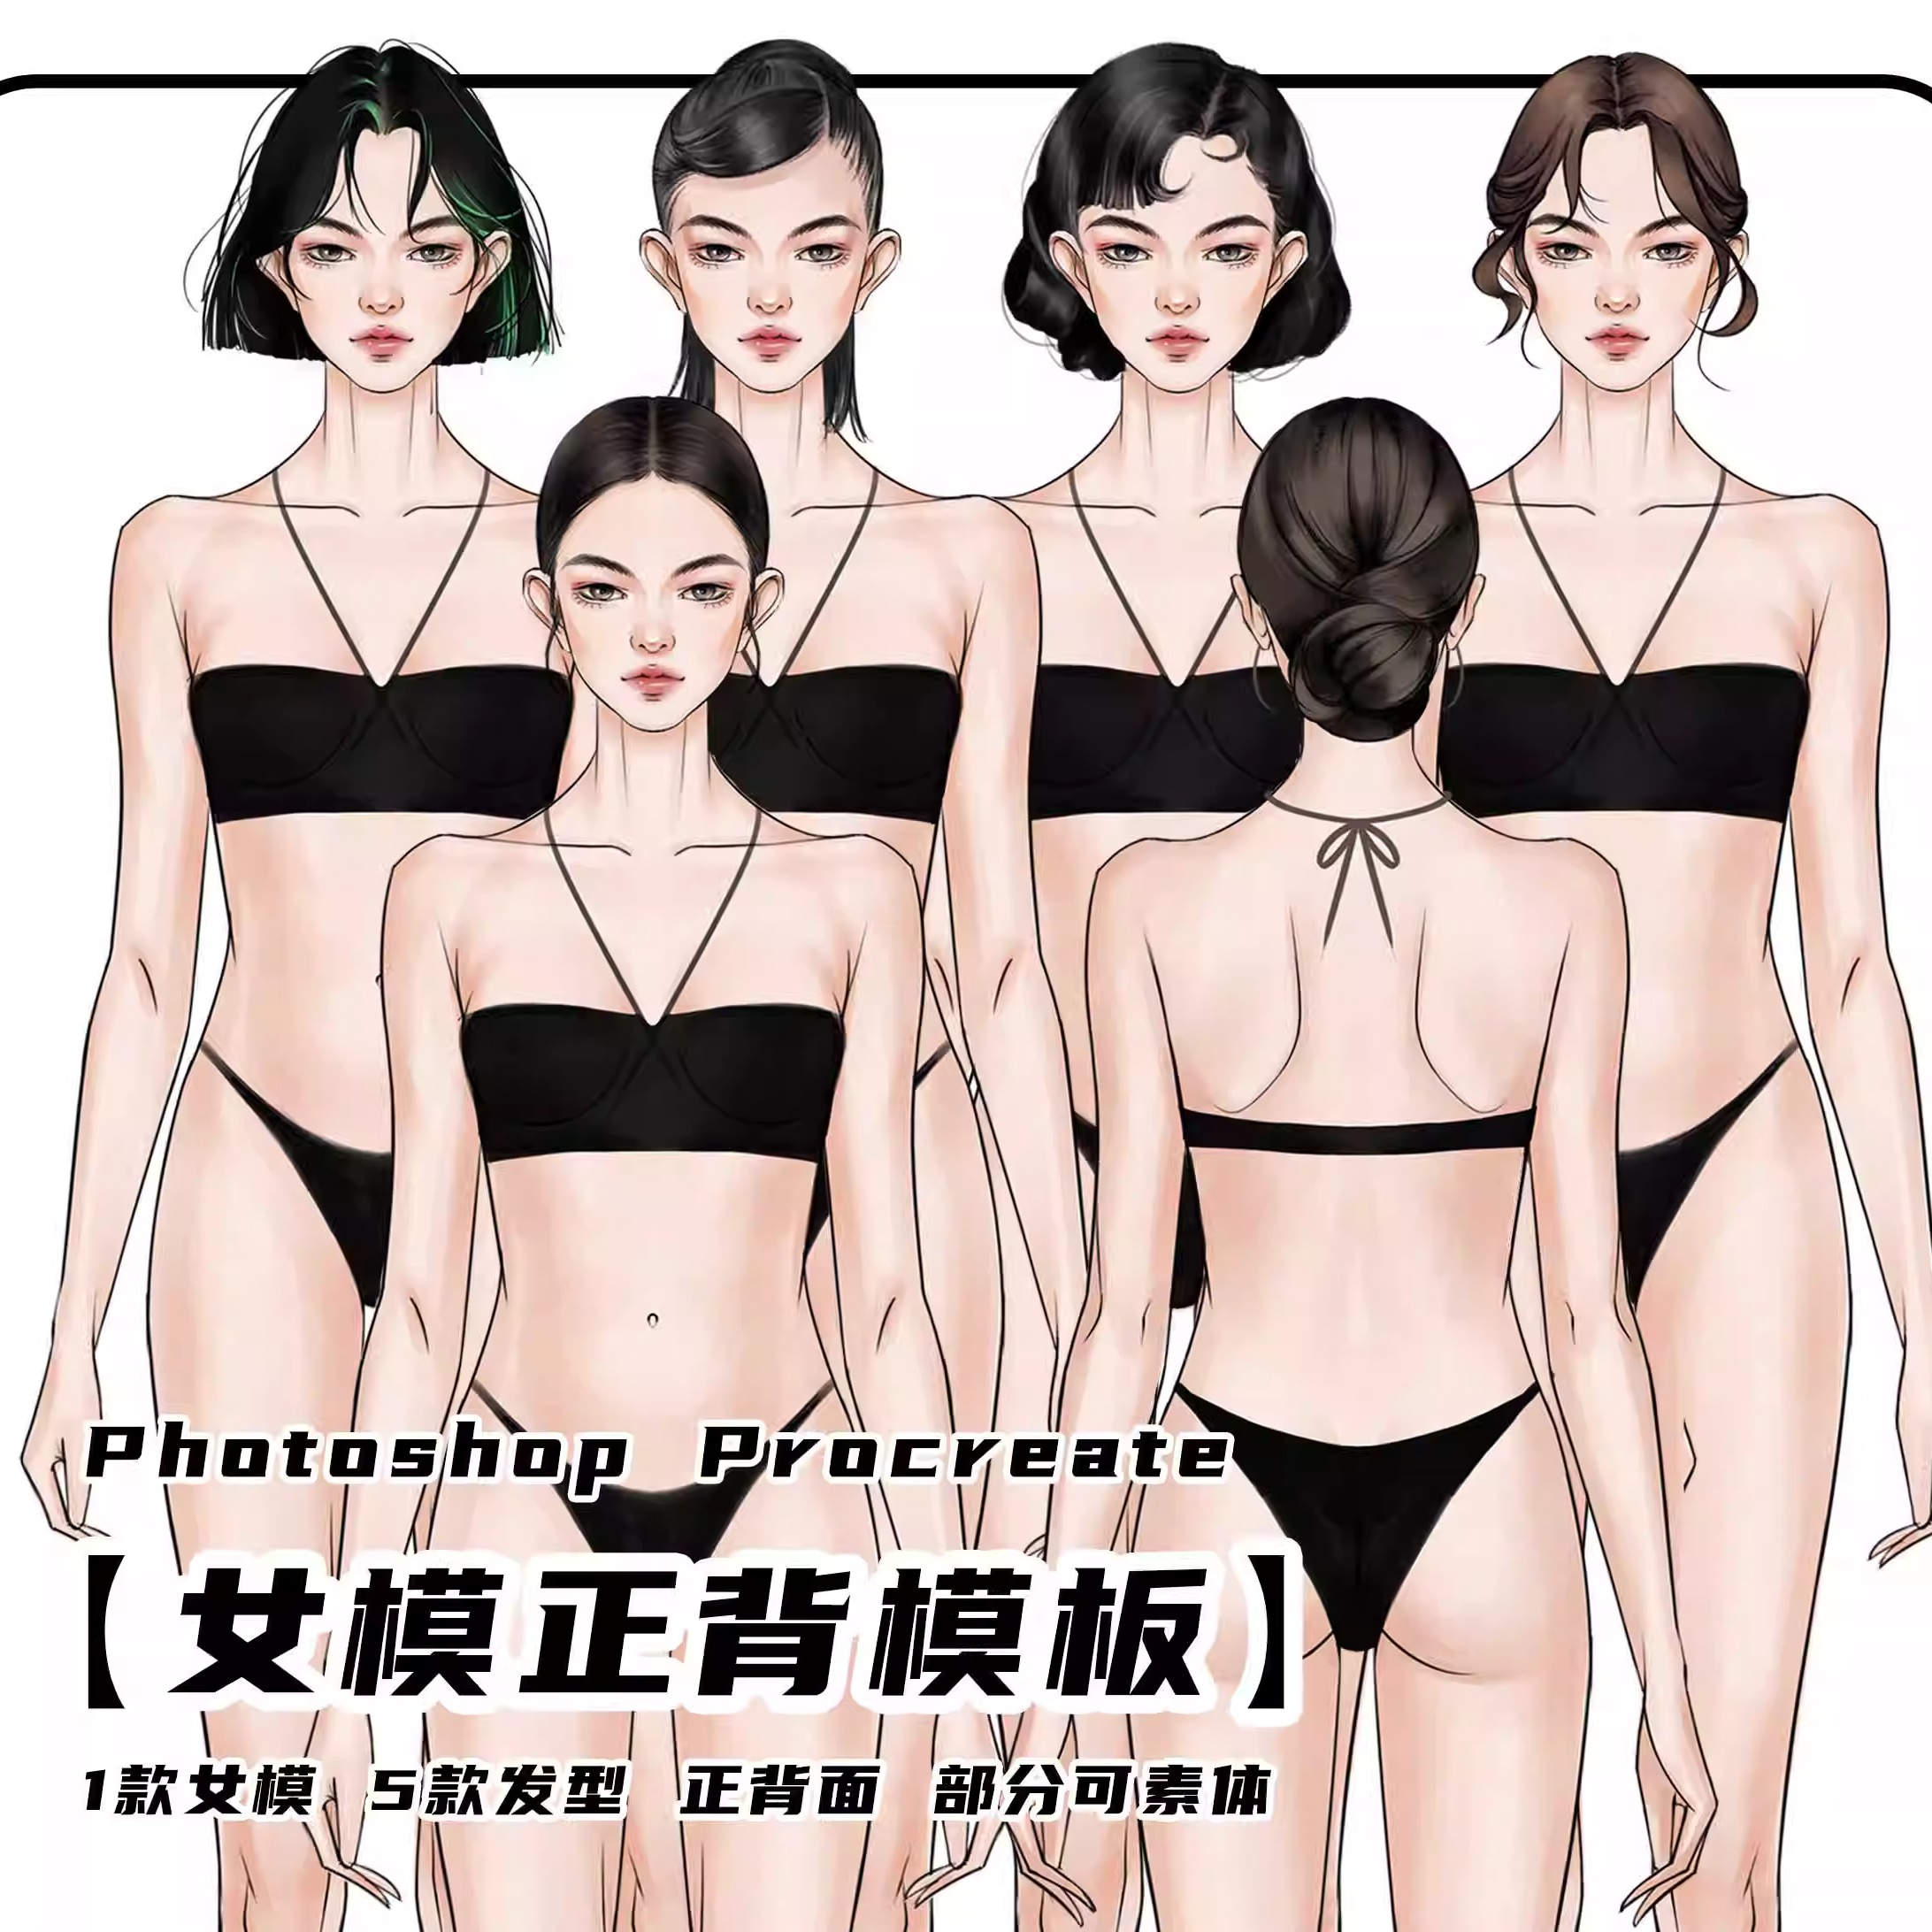 服装设计高清人体模特素材男女正背面效果图psd源文件